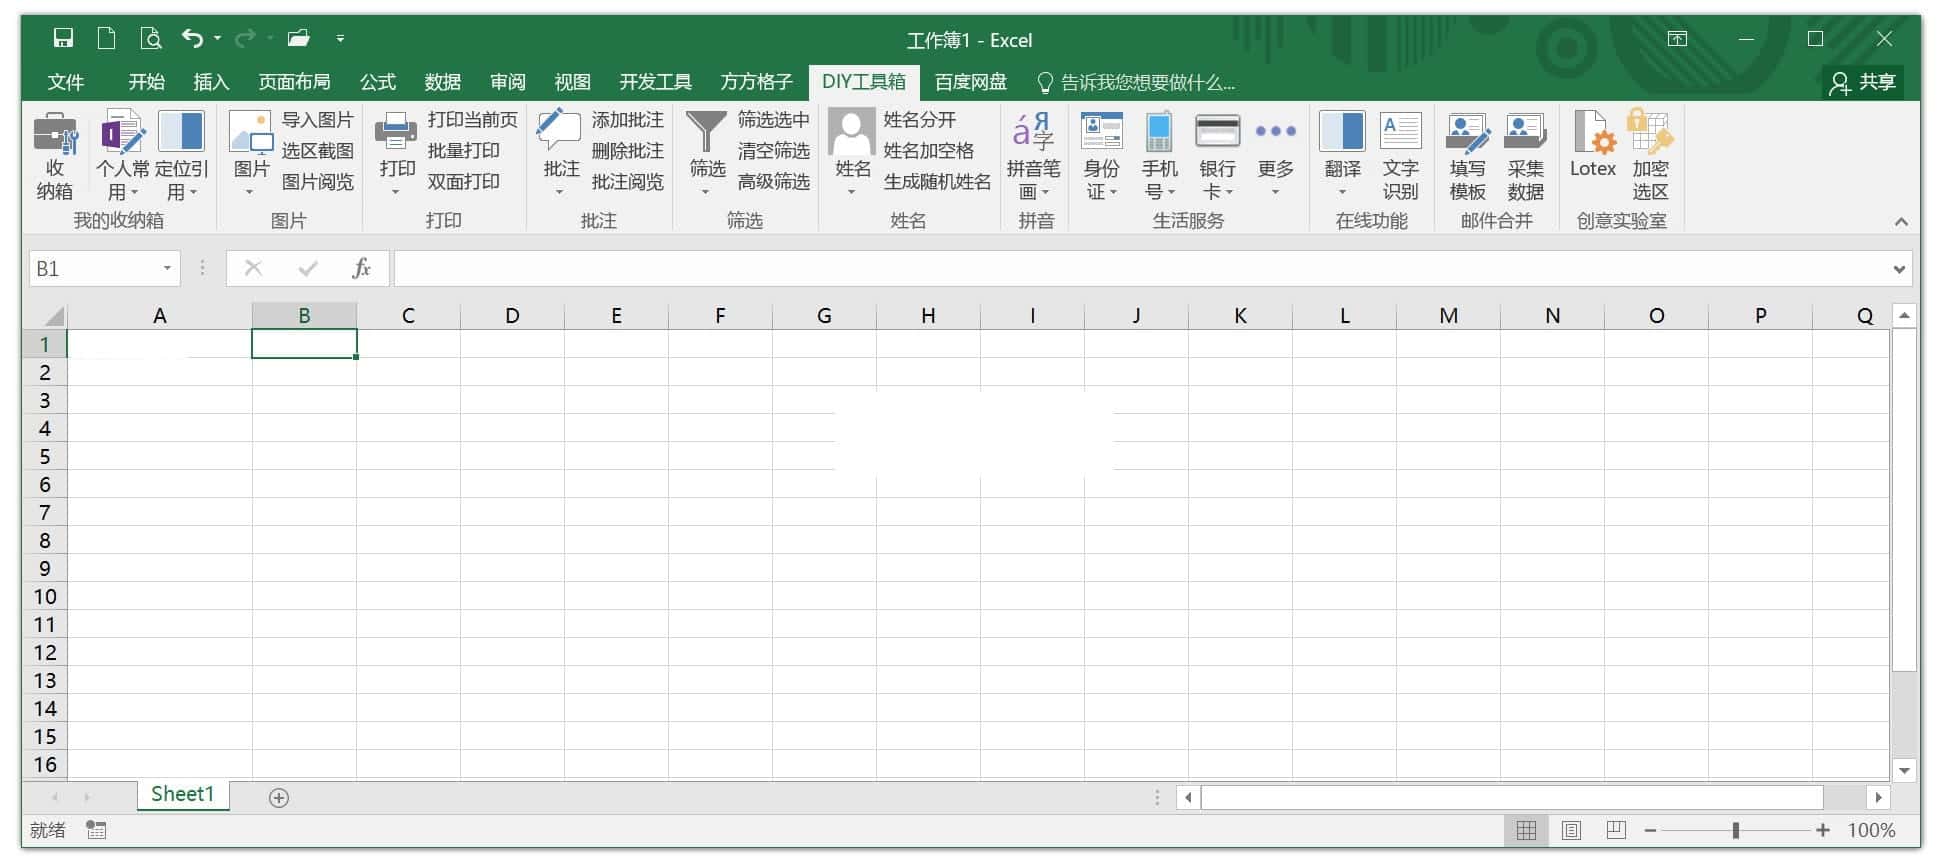 方方格子 Excel工具箱 v3.7.0.0 特别版-无痕哥's Blog